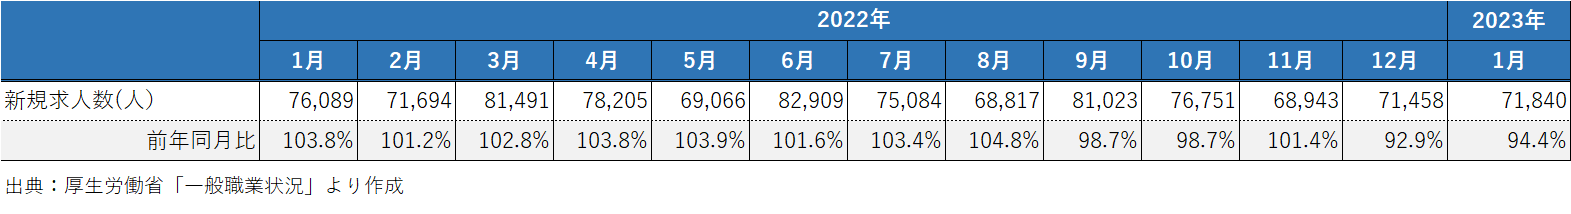 202303_2_建設業の新規求人数の推移